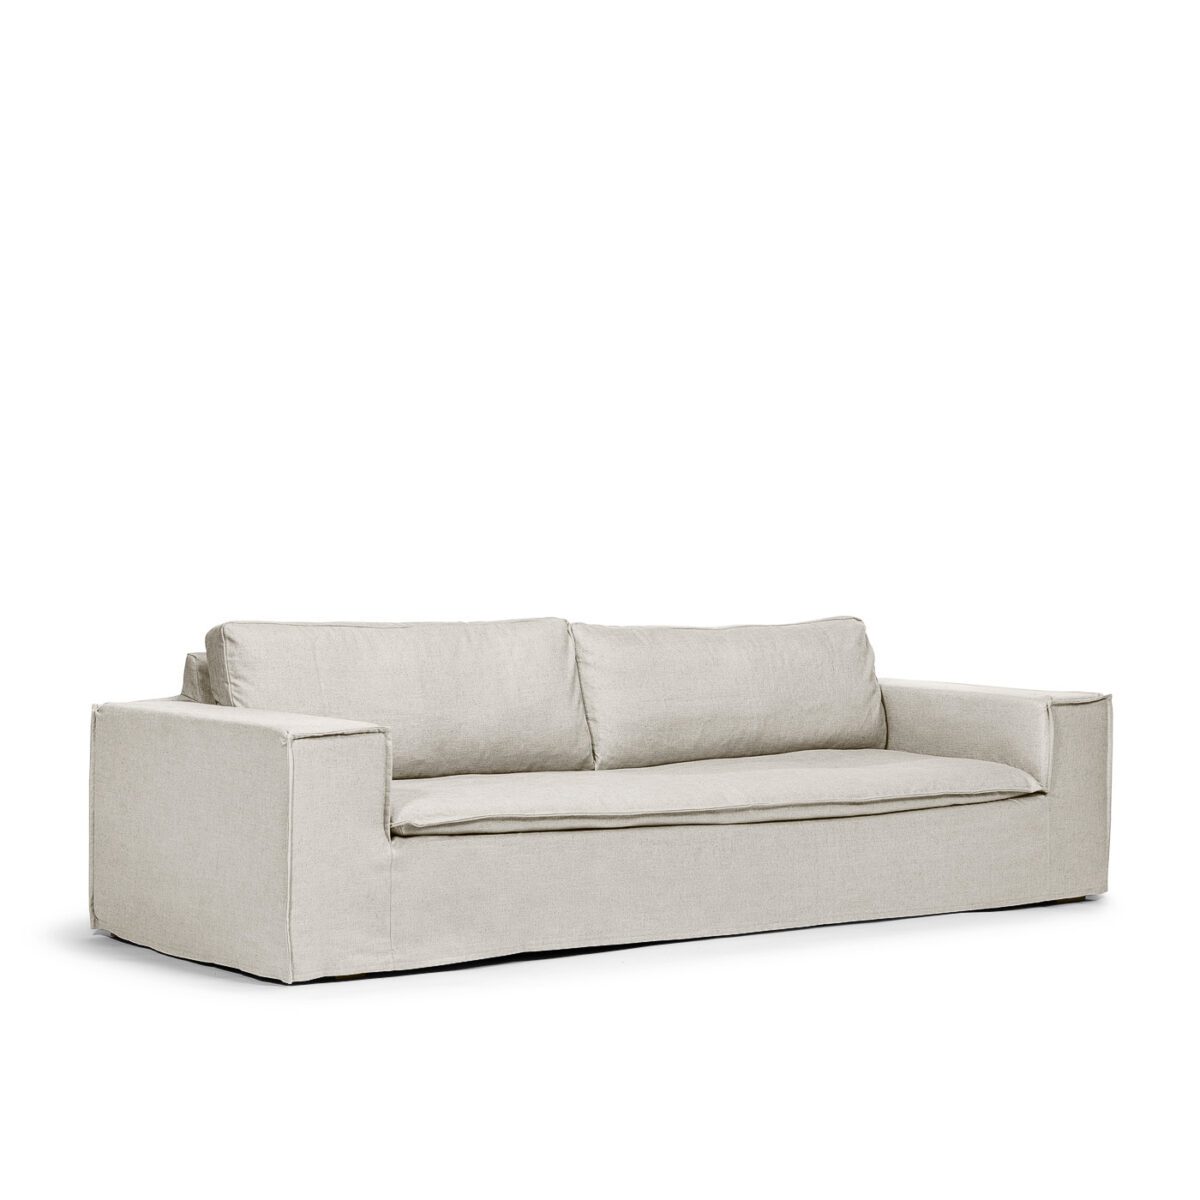 Luca Original 3-Seat Sofa Off White